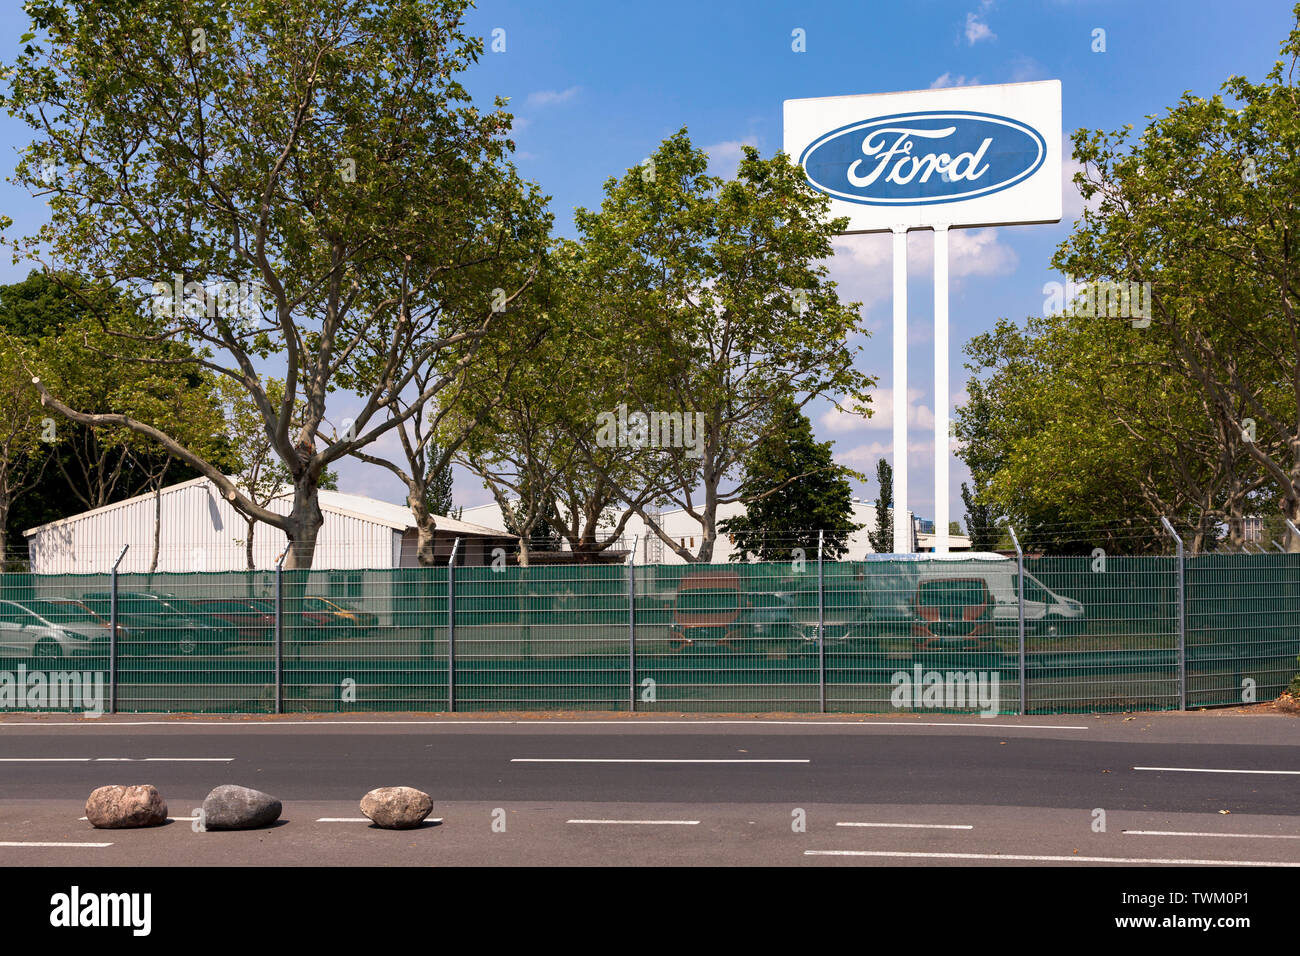 Grand panneau publicitaire à l'usine automobile Ford dans la ville, quartier de Niehl, Cologne, Allemagne. grosses Werbeschild an den Ford-Werken dans Niehl, Banque D'Images